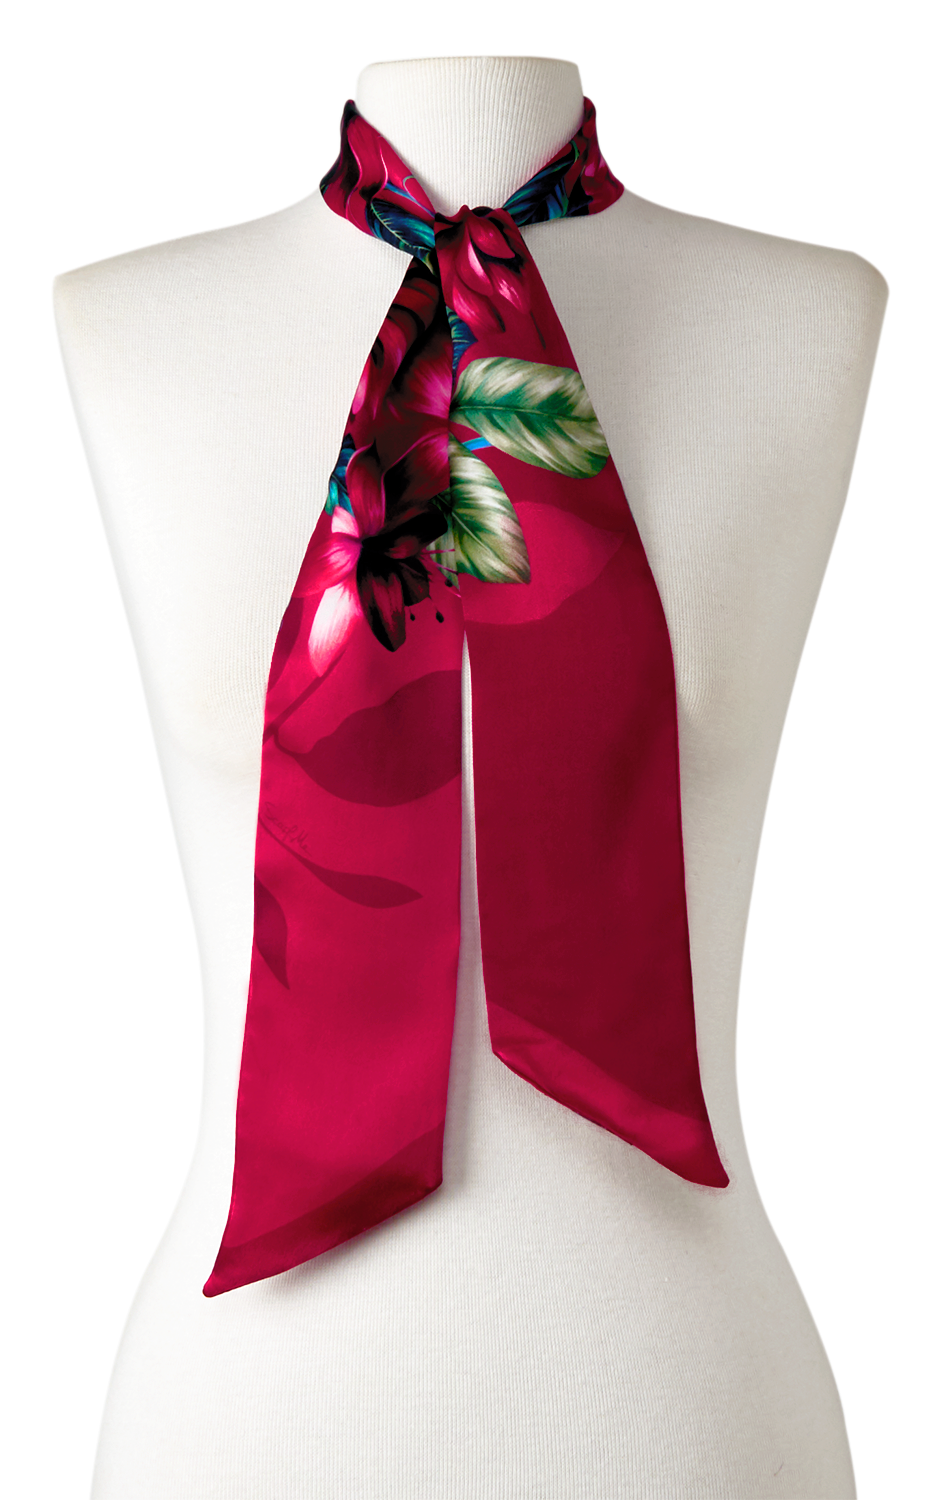 faixa pescoço cabeça twilly scarf me flor flamingo magenta em cetim de poliéster 8x130cm